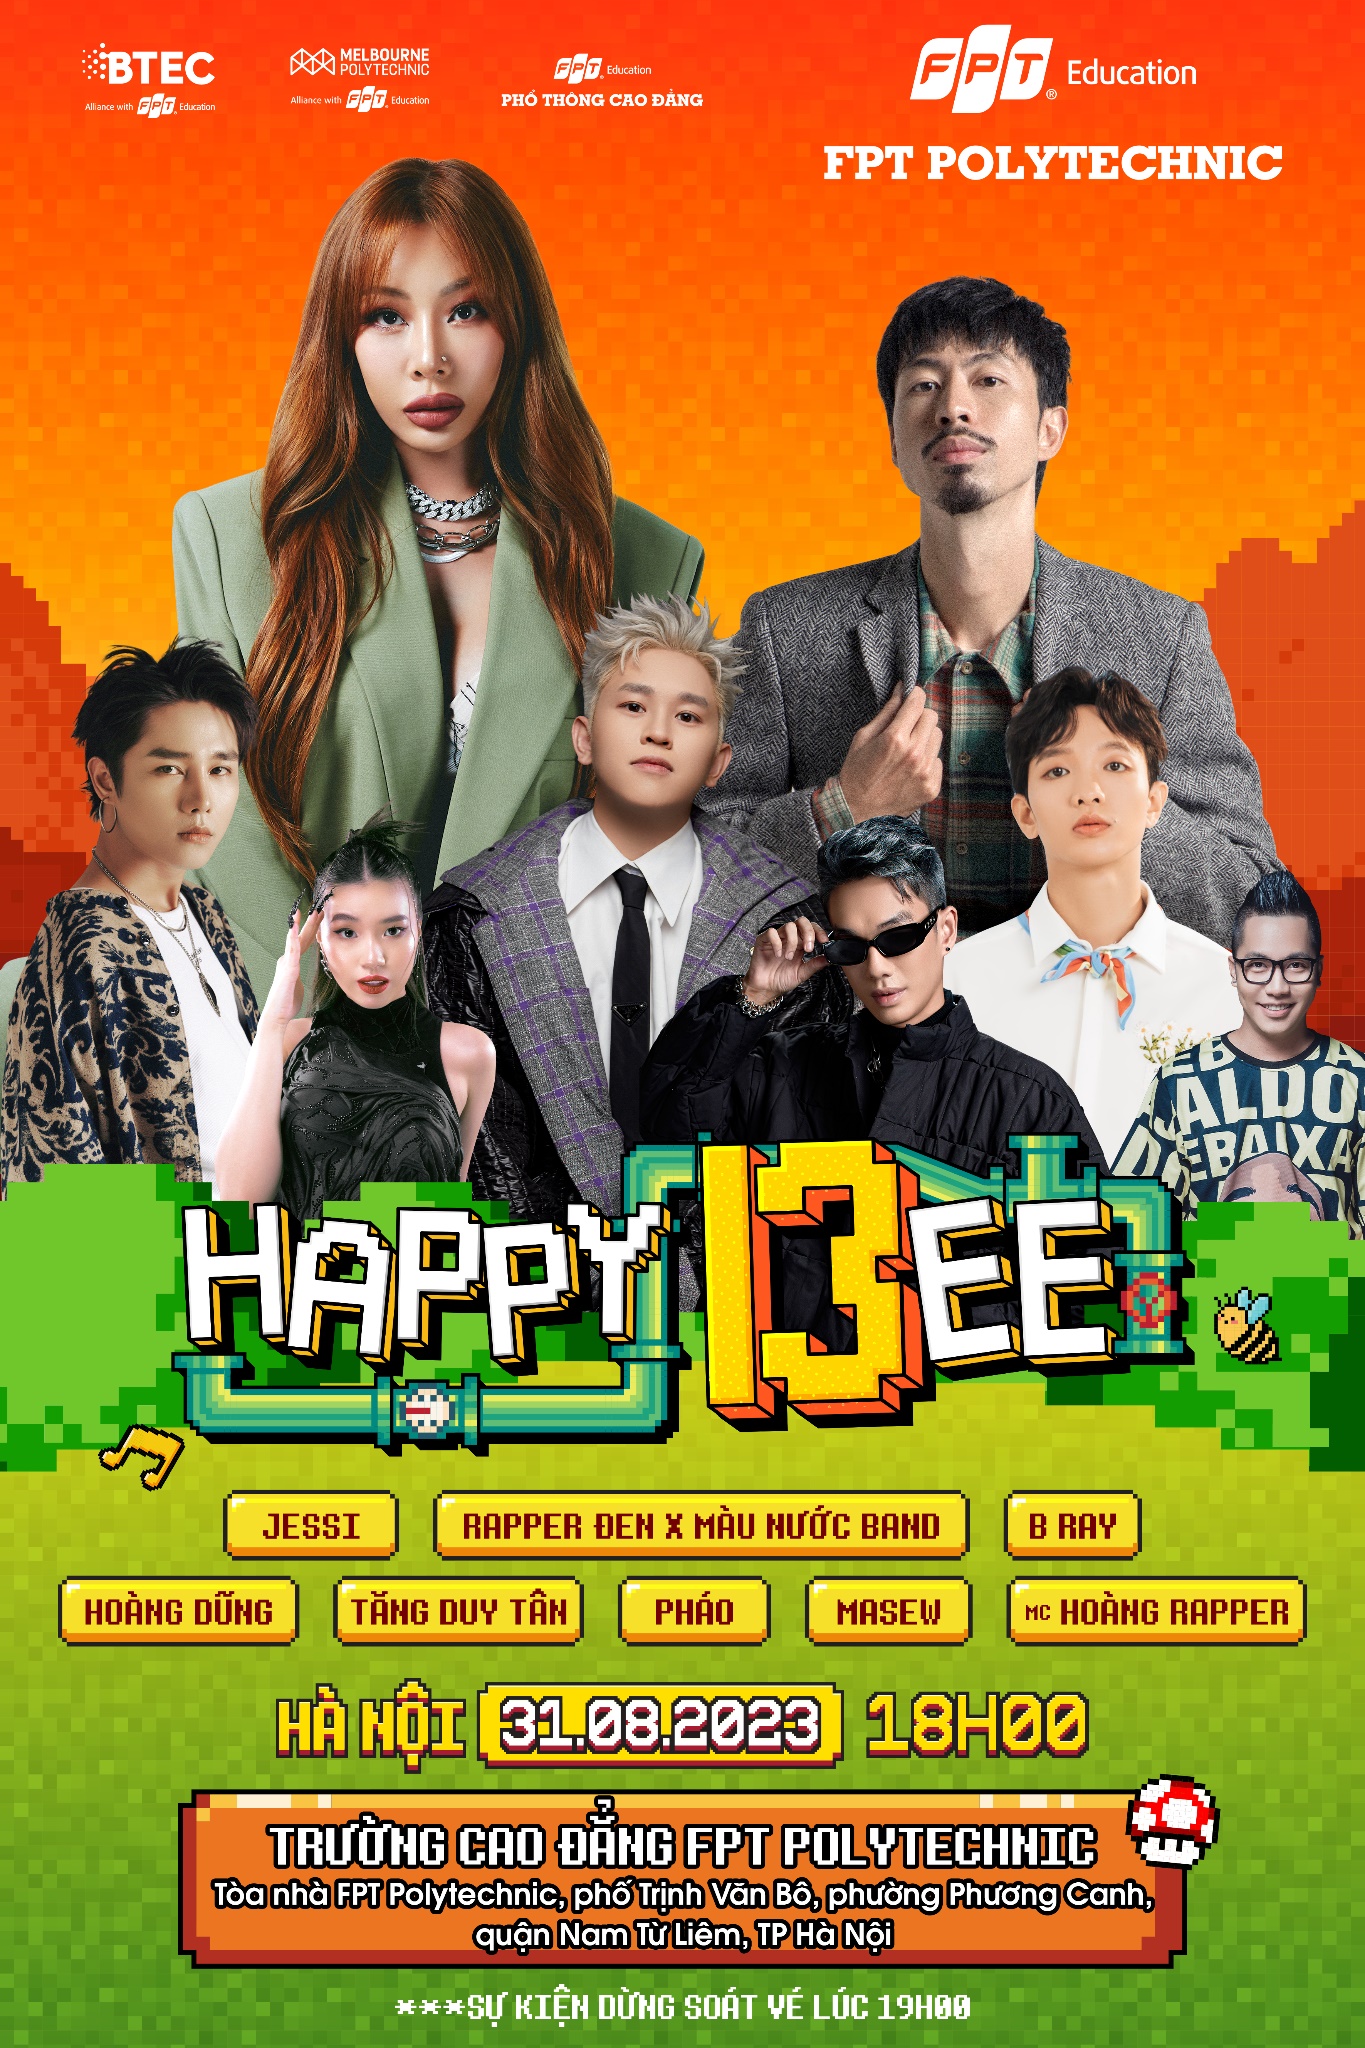 Happy Bee 13 đổ bộ Hà Nội cùng dàn line-up cực xịn: chị đại Kpop Jessi, Đen, Hoàng Dũng, B Ray, Masew… - Ảnh 1.